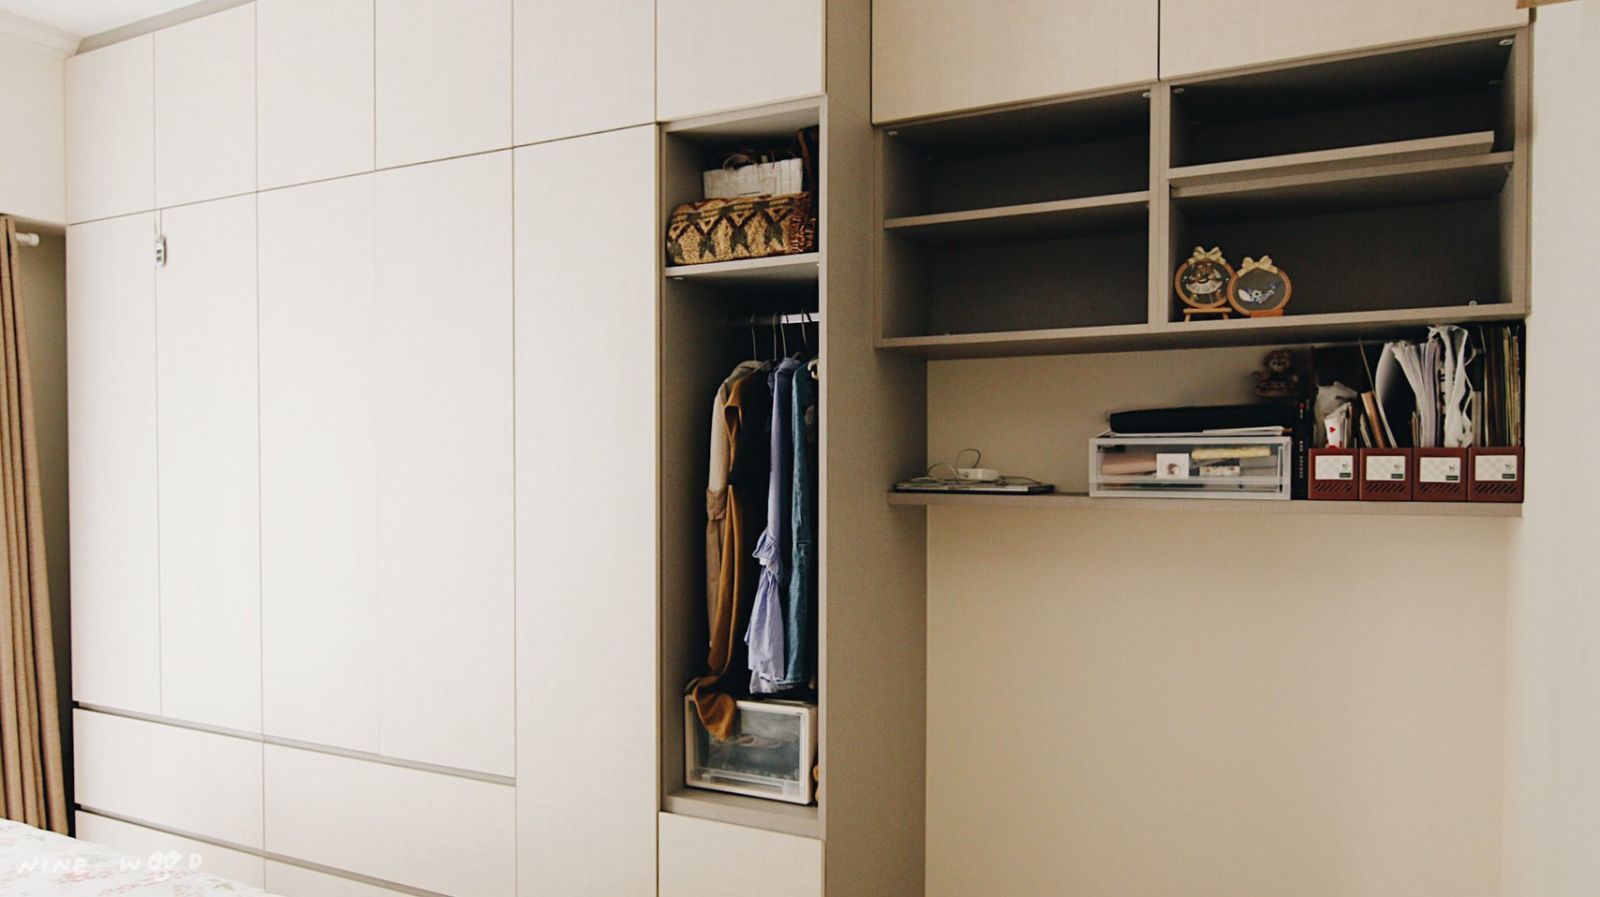 更衣室 更衣是設計 開放式更衣室 衣櫃設計 系統傢俱衣櫃 系統衣櫃 IKEA